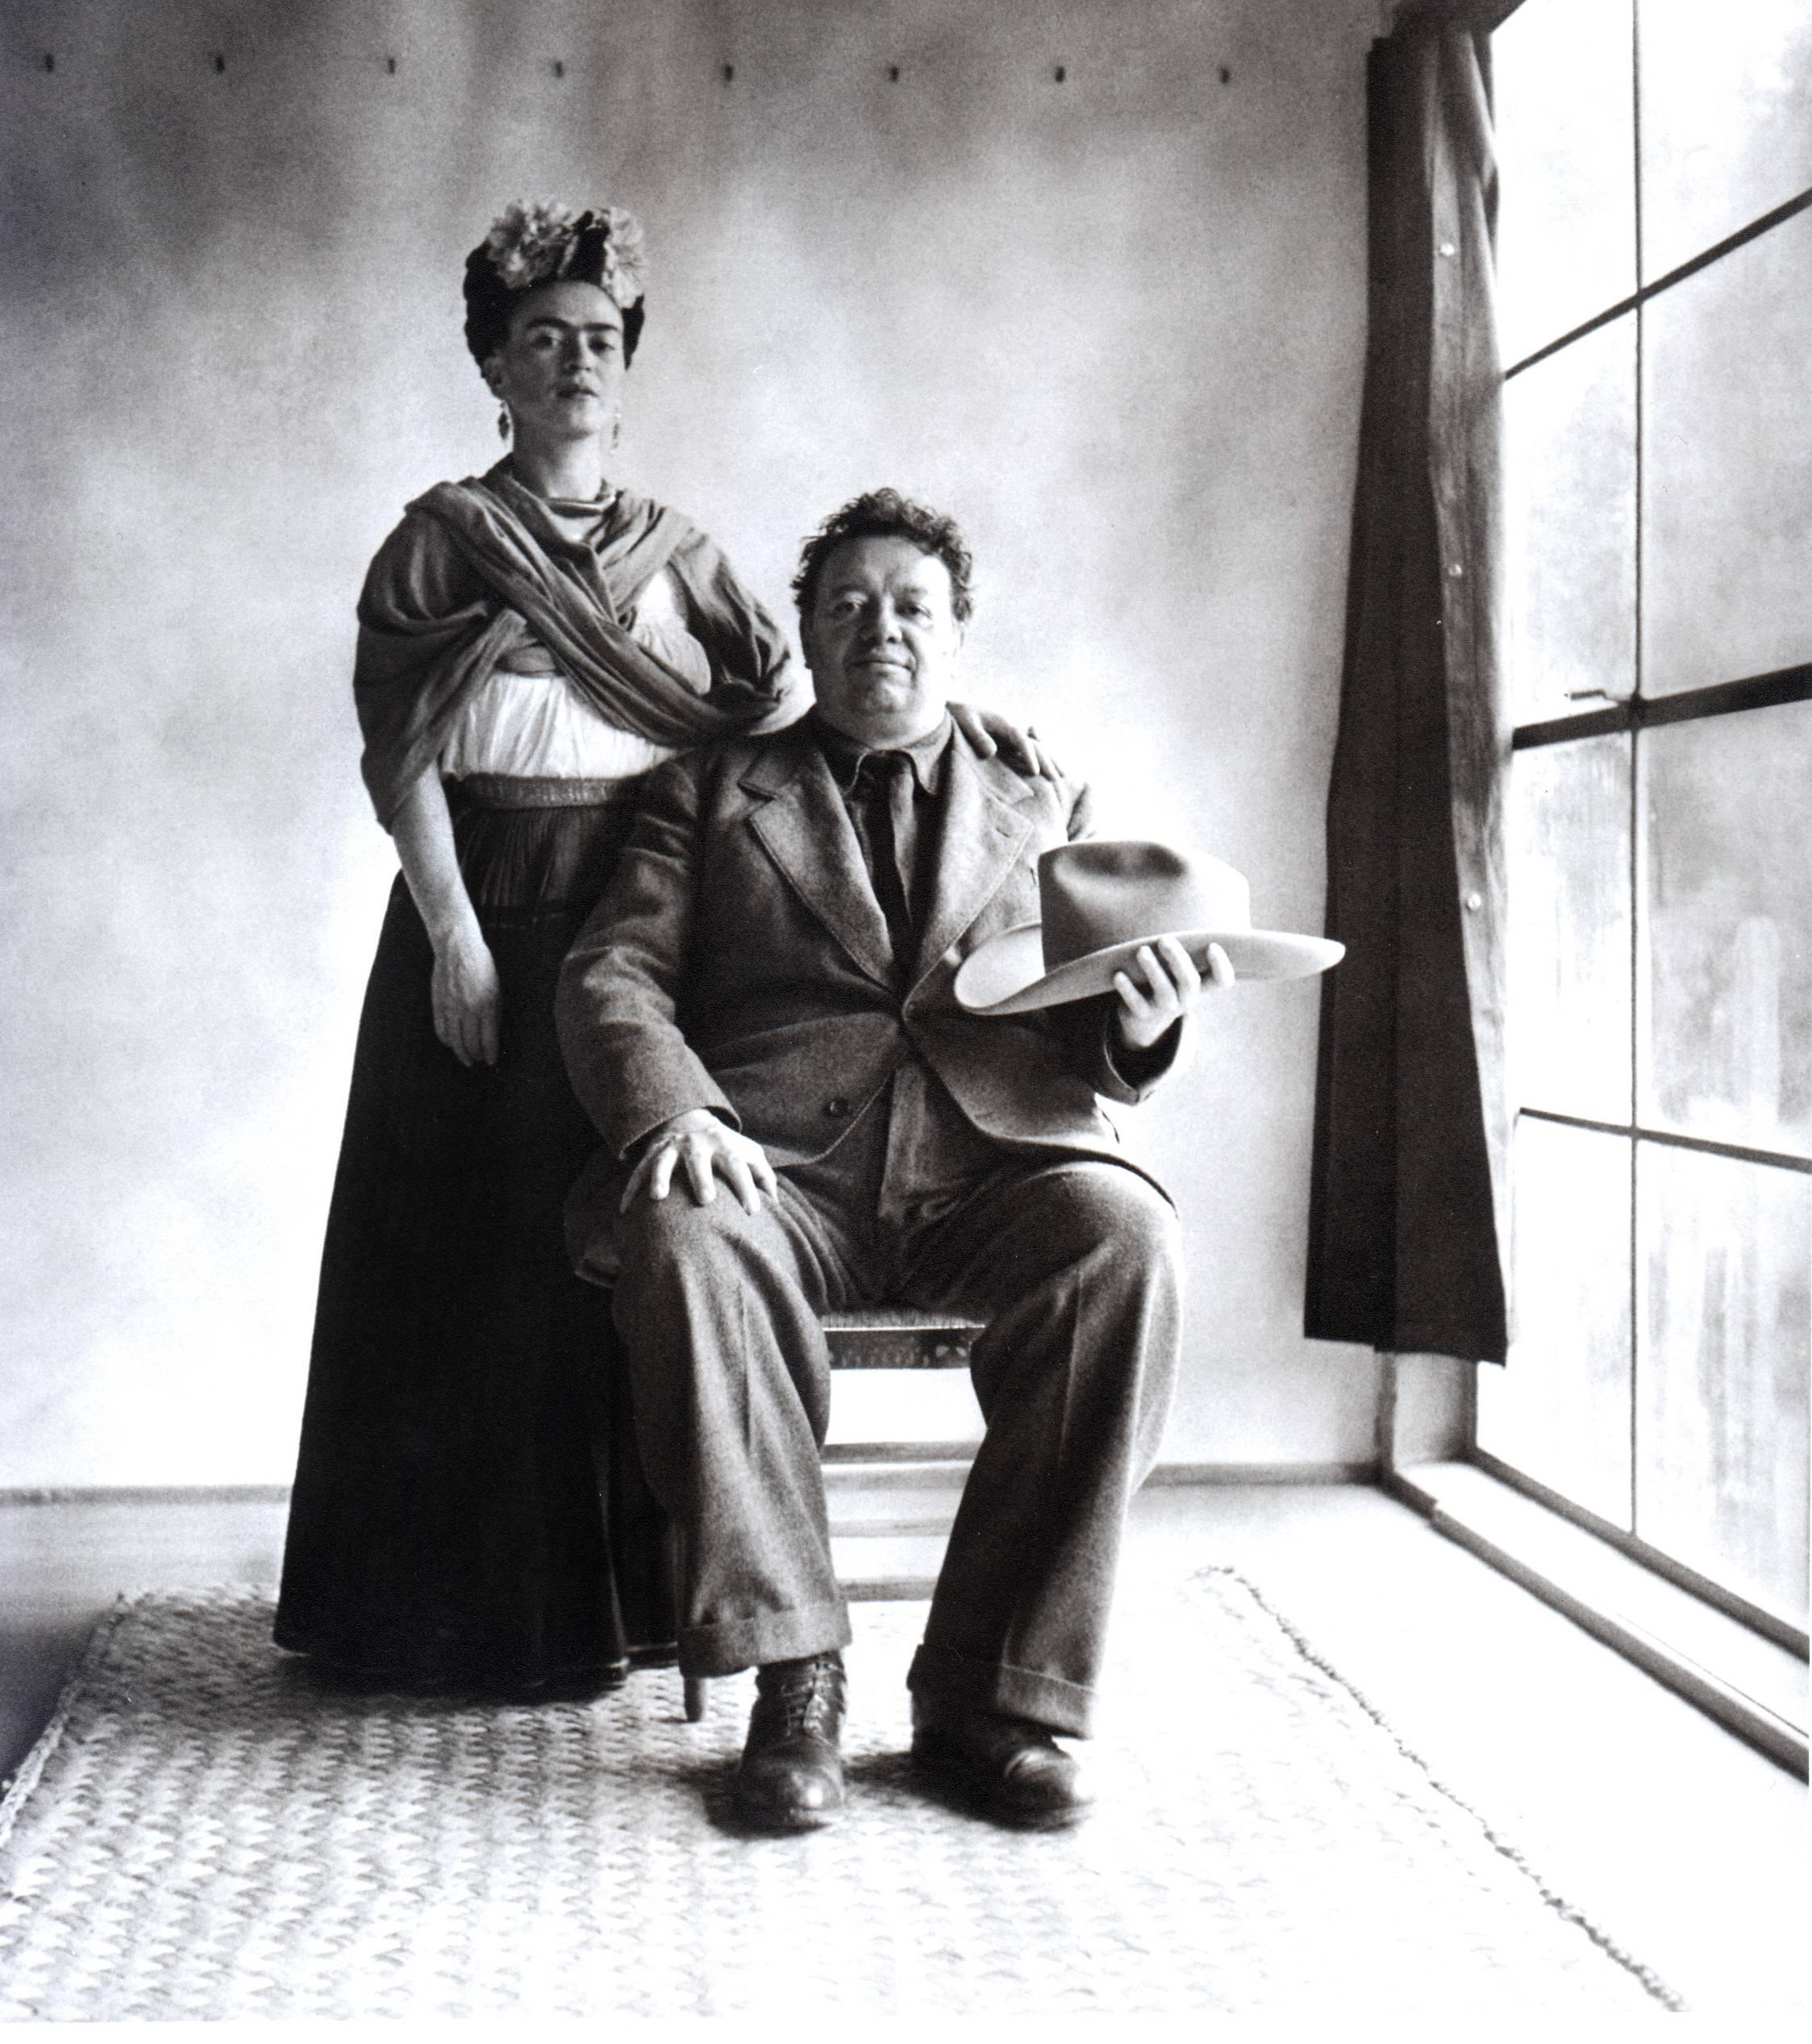 Frida et Diego avec chapeau de Nickolas Muray représente un couple posant pour un portrait. Frida Kahlo est debout à côté de Diego Rivera, qui est assis et tient un chapeau à la main. Ils se trouvent dans une pièce vide, avec une grande fenêtre